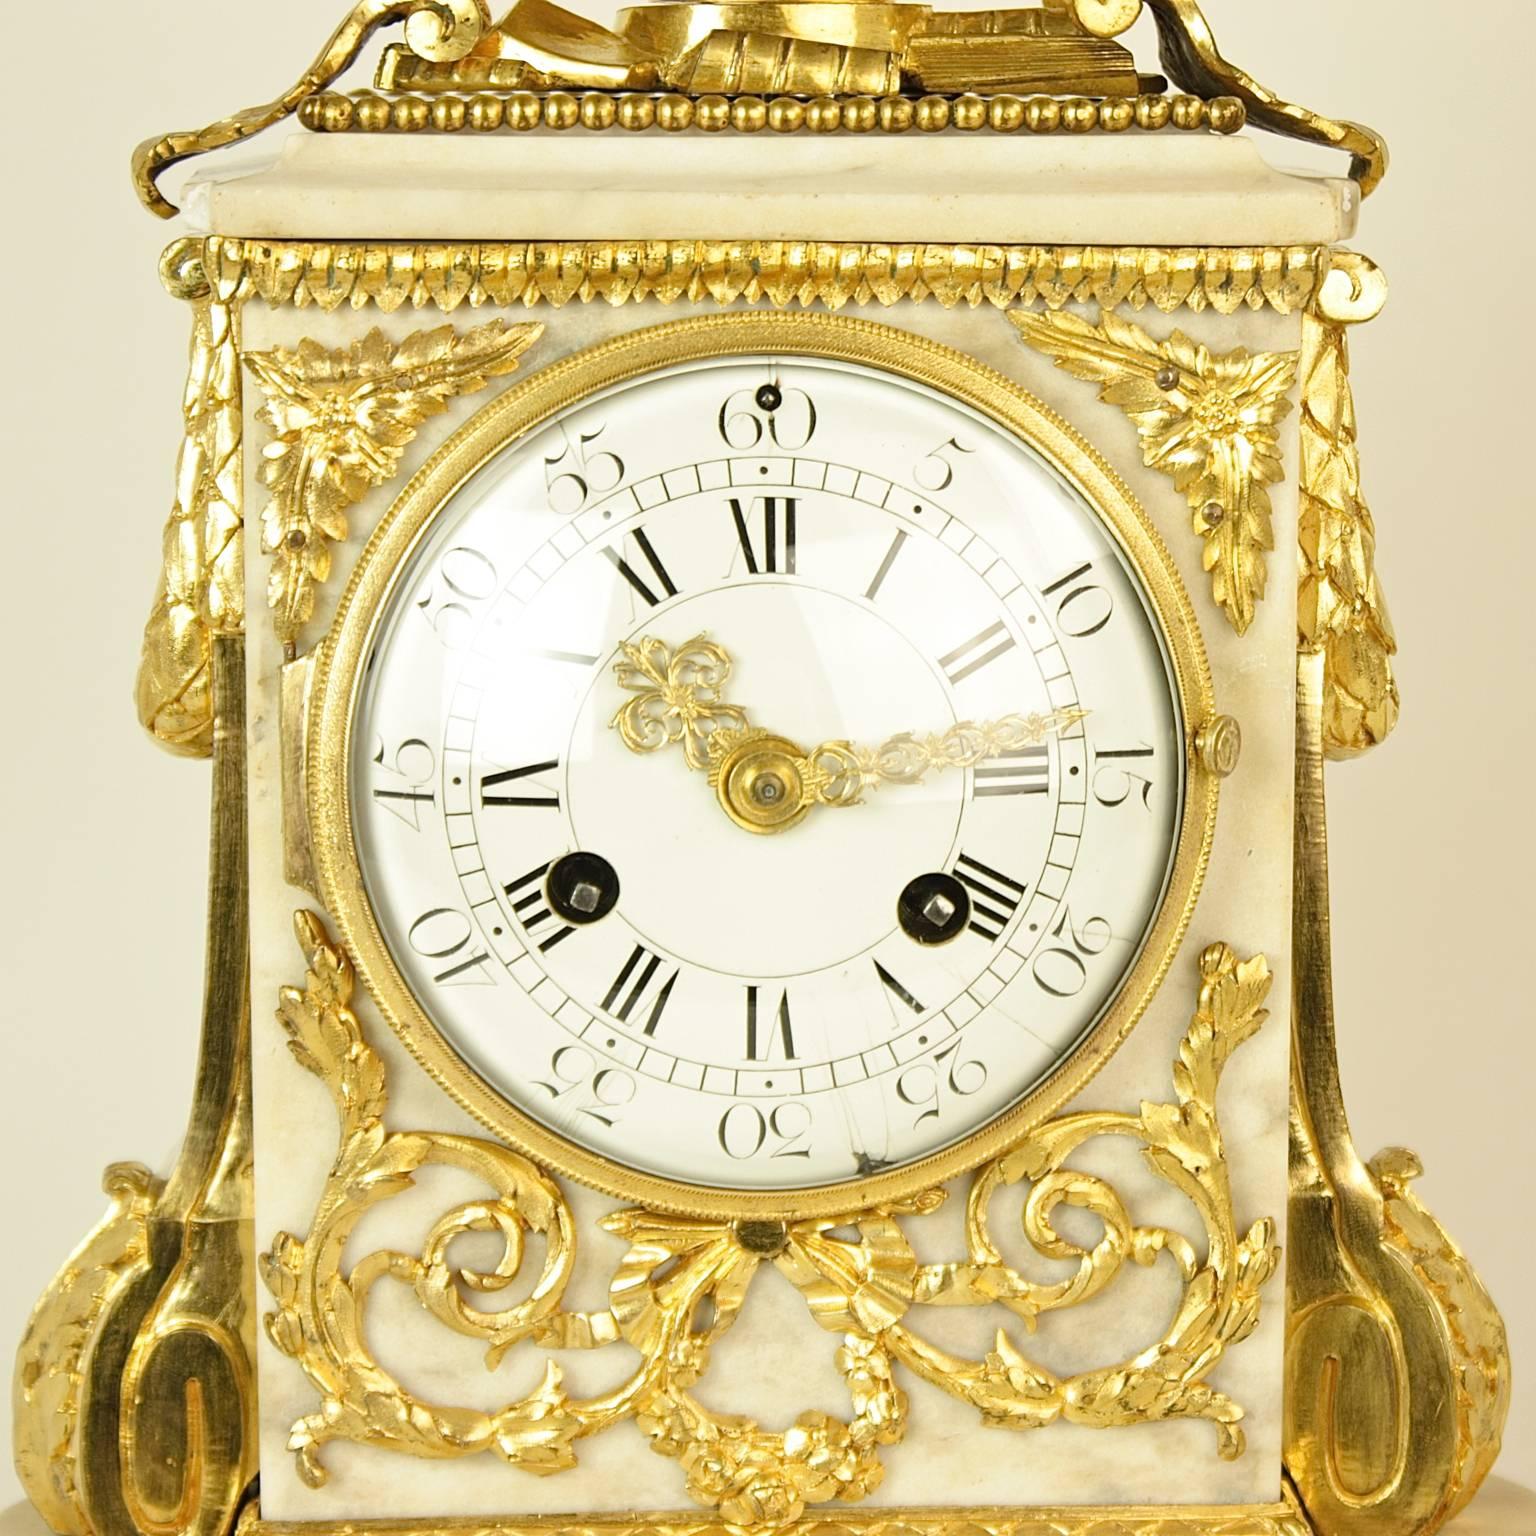 Eine Louis-XVI-Manteluhr aus vergoldeter Bronze und weißem Marmor aus dem 18. Jahrhundert, um 1780

Eine Louis-XVI-Uhr aus vergoldeter Bronze und weißem Marmor aus dem 18. Jahrhundert, mit weißem Emailzifferblatt mit römischen und arabischen